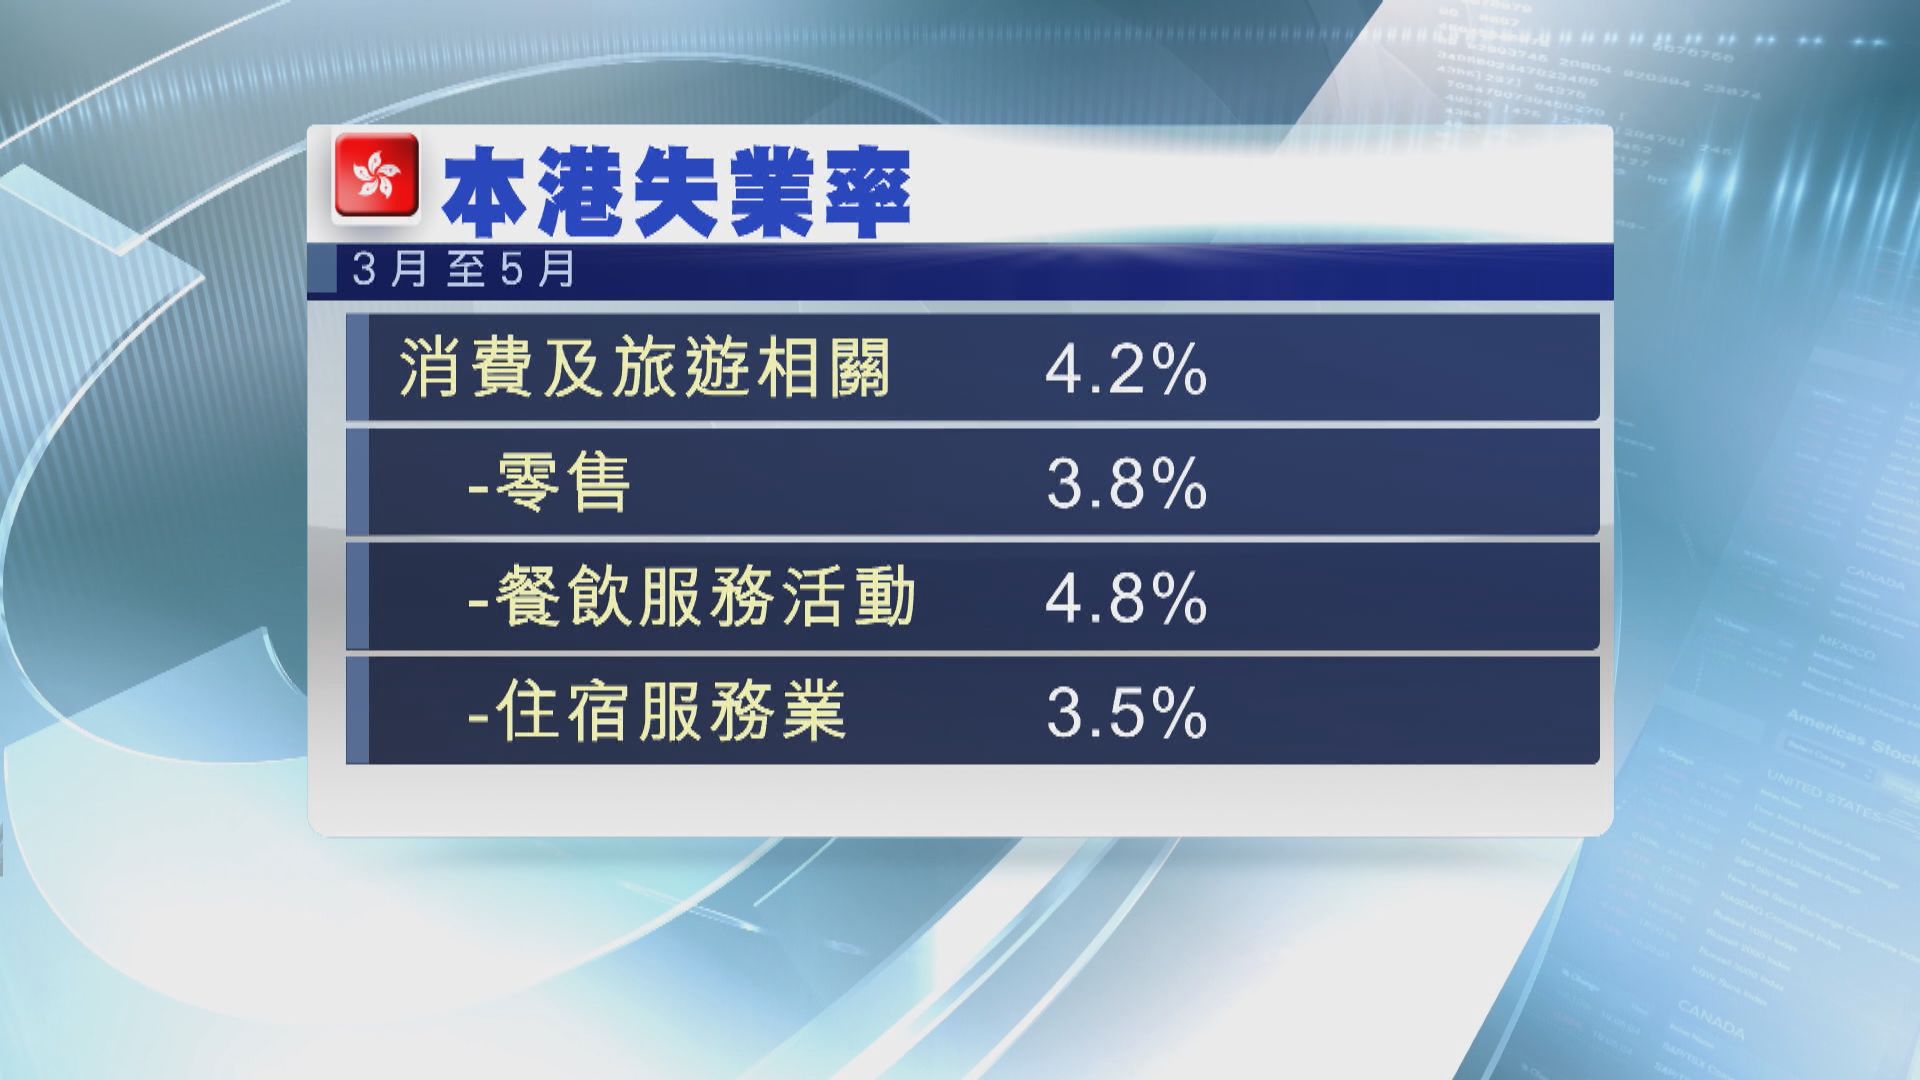 本港最新失業率維持在3% 較預期高